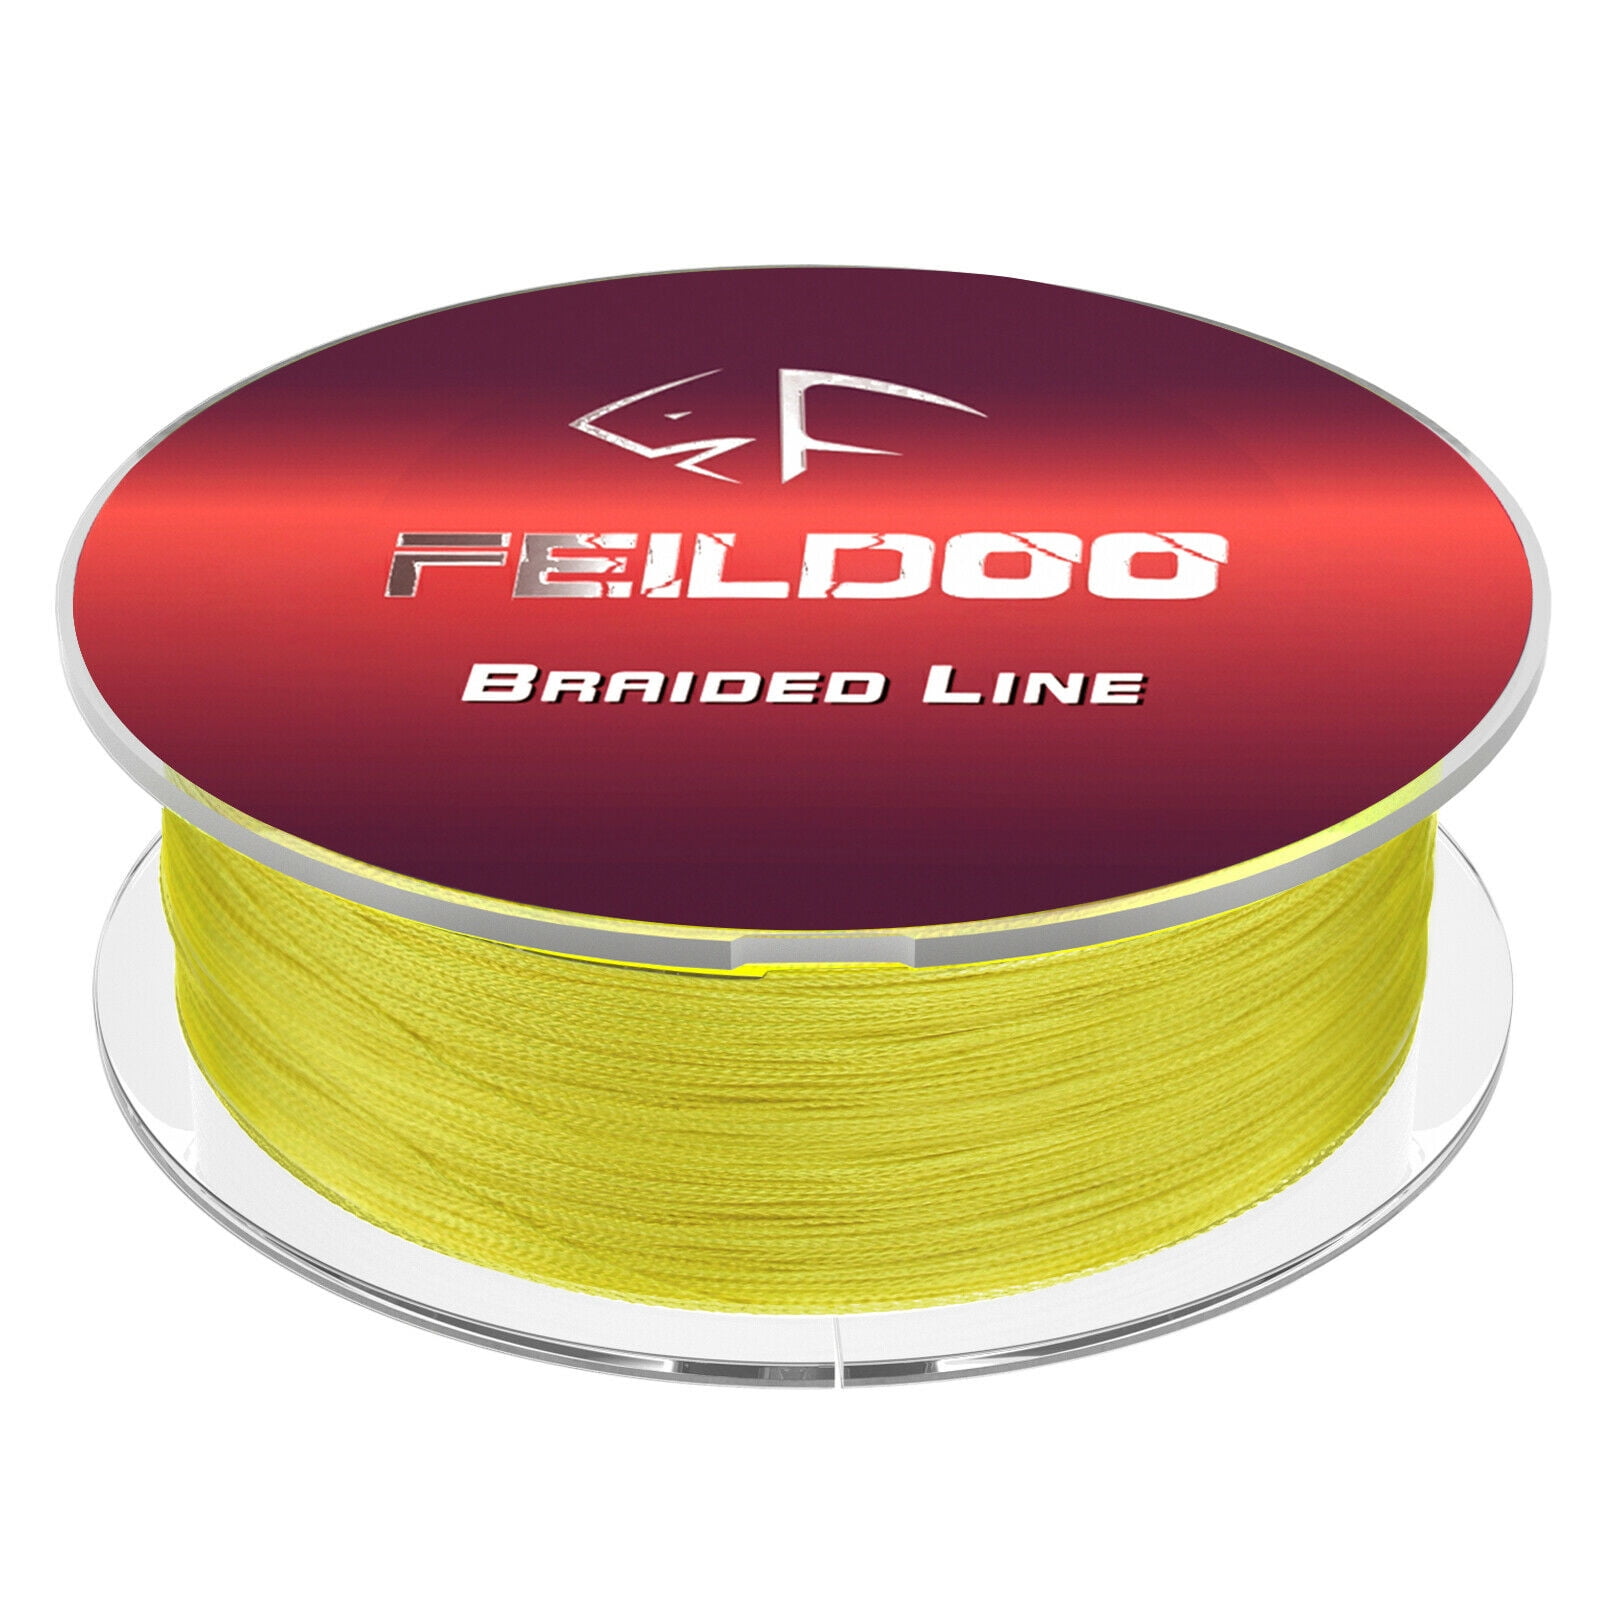 Feildoo Braided Fishing Line,40LB,50LB,60LB,80LB,Yellow